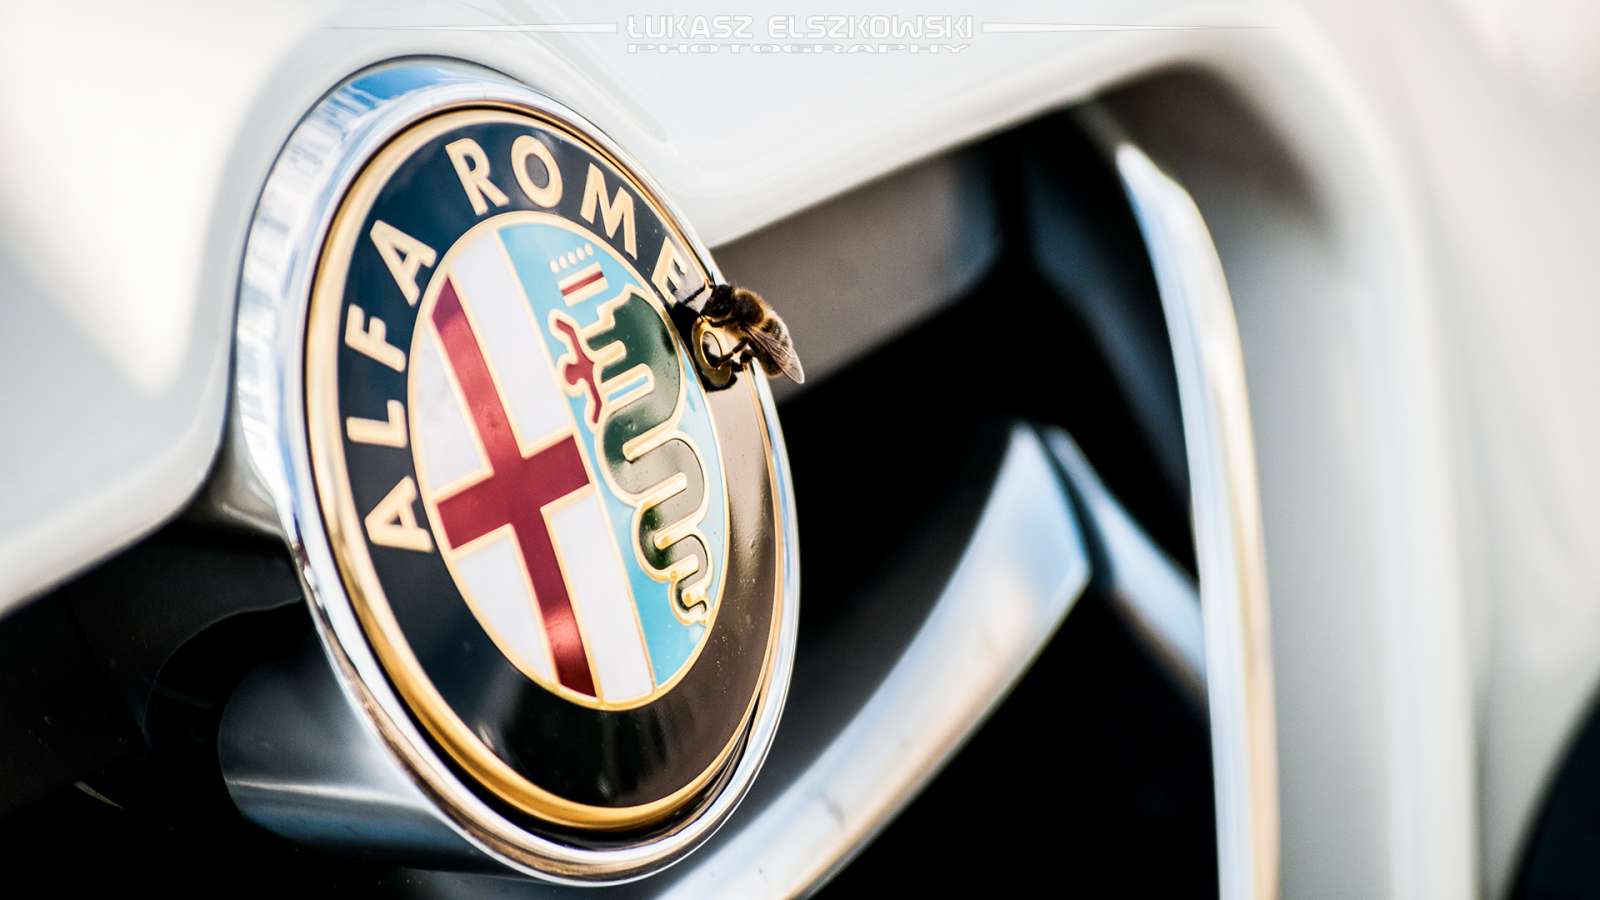 Alfa Romeo Giullietta